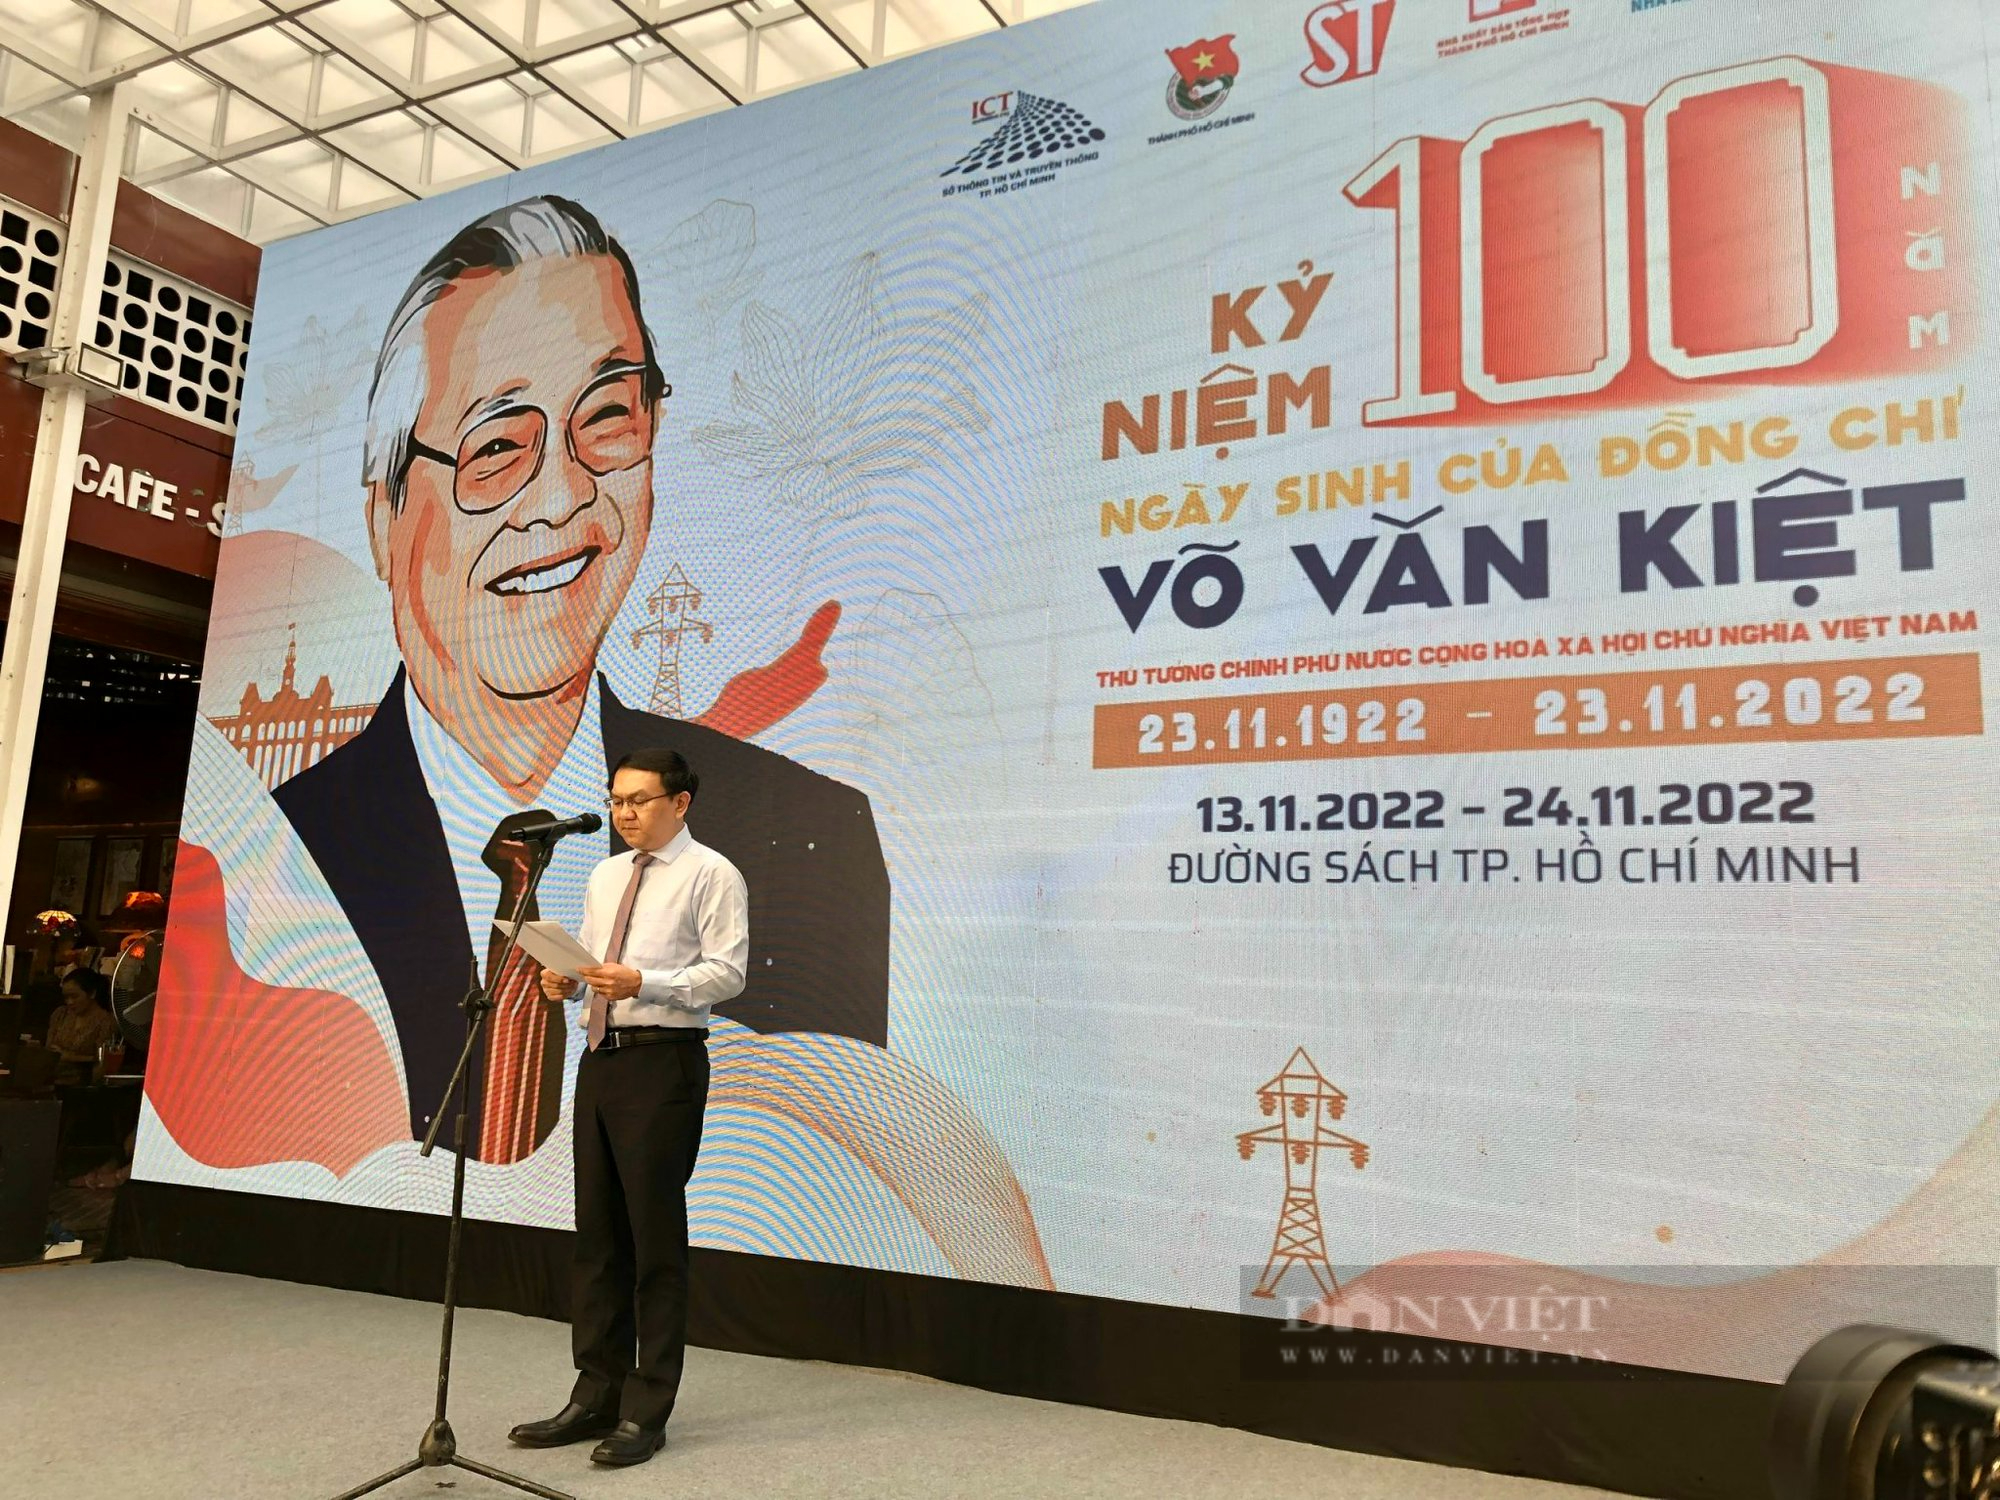 TP.HCM khai mạc các hoạt động kỷ niệm 100 năm Ngày sinh cố Thủ tướng Võ Văn Kiệt - Ảnh 1.